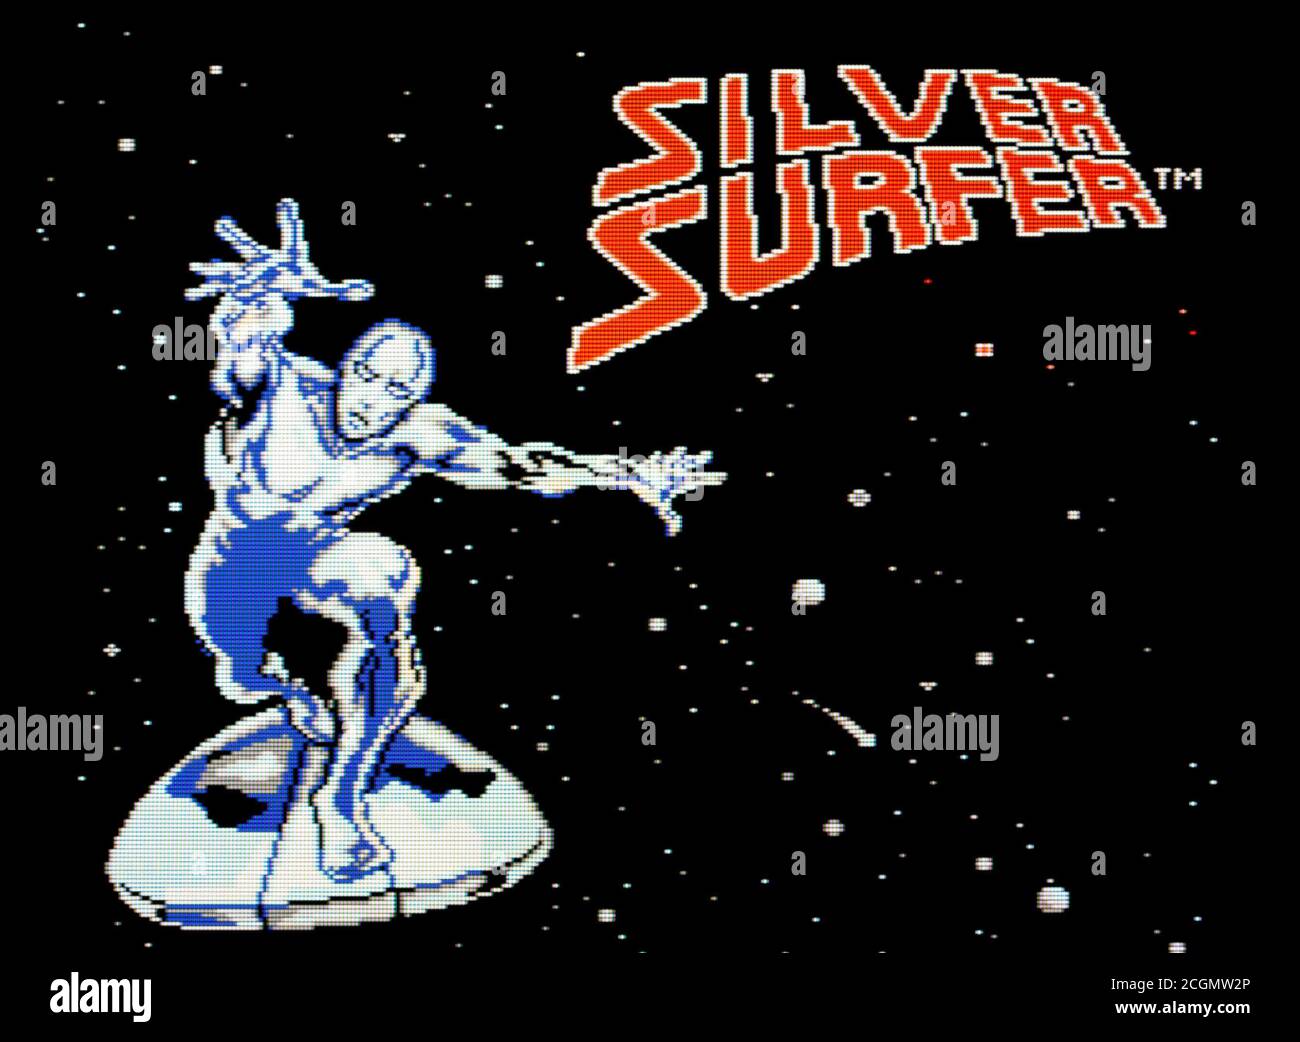 Silver Surfer - Nintendo Entertainment System - NES Videospiel - Nur für redaktionelle Zwecke Stockfoto